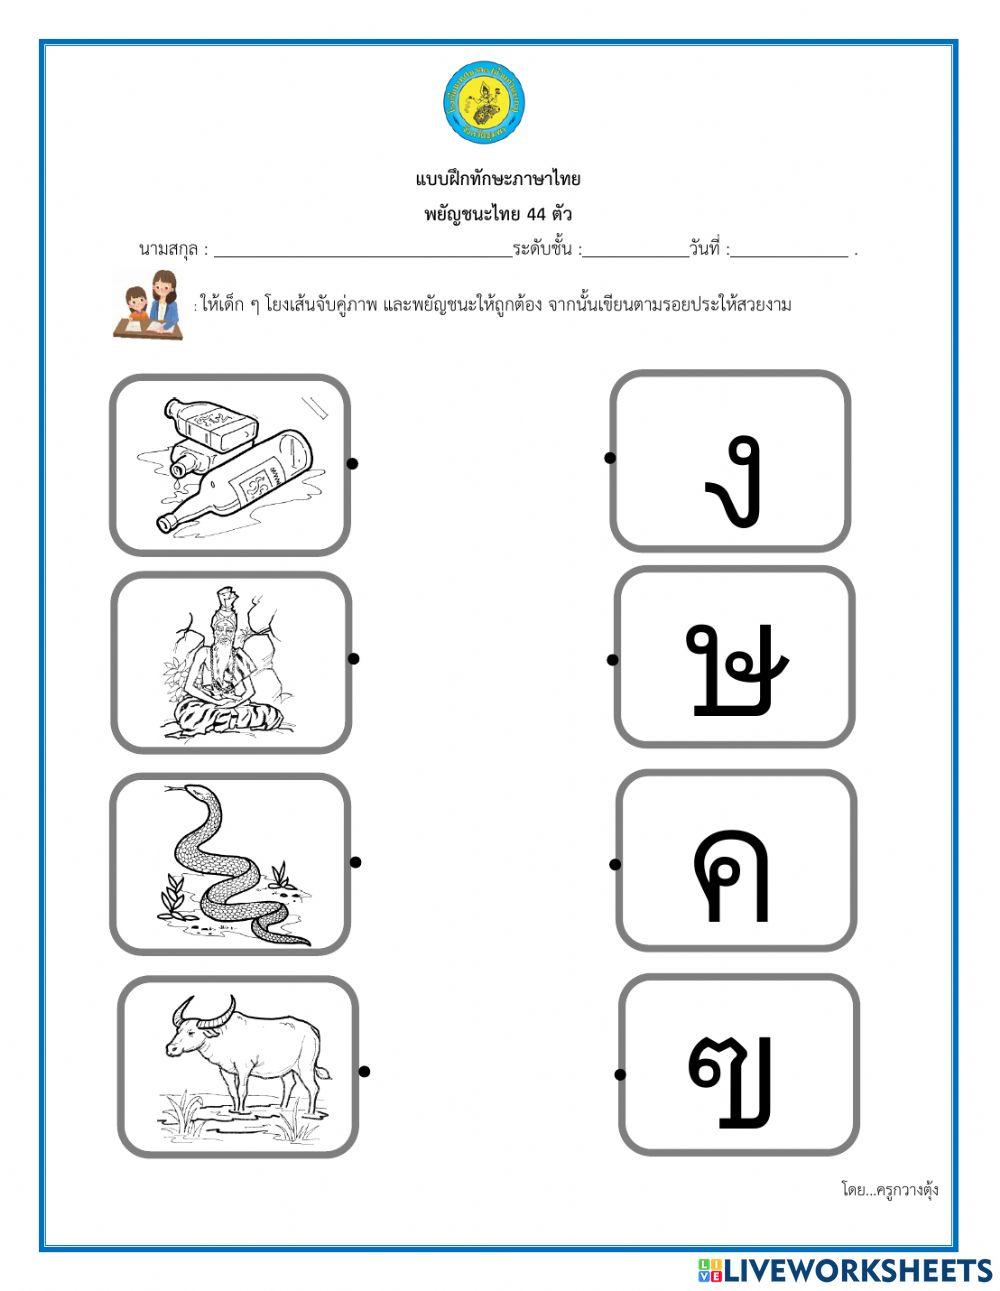 เกมฝึกทักษะภาษาไทย